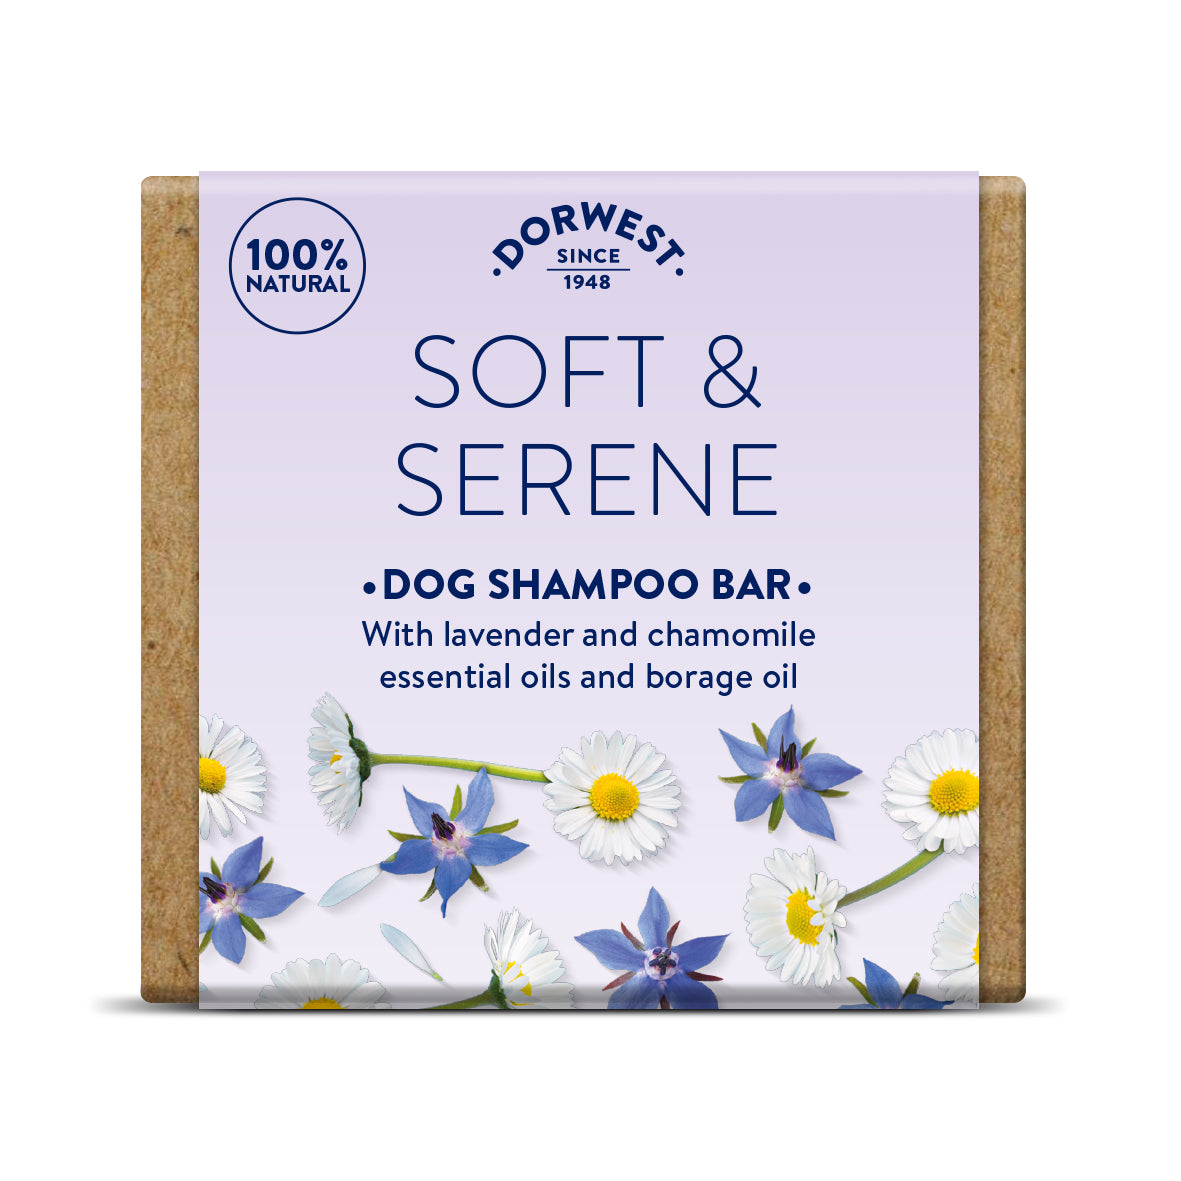 Dorwest Soft & Serene Dog Shampoo Bar